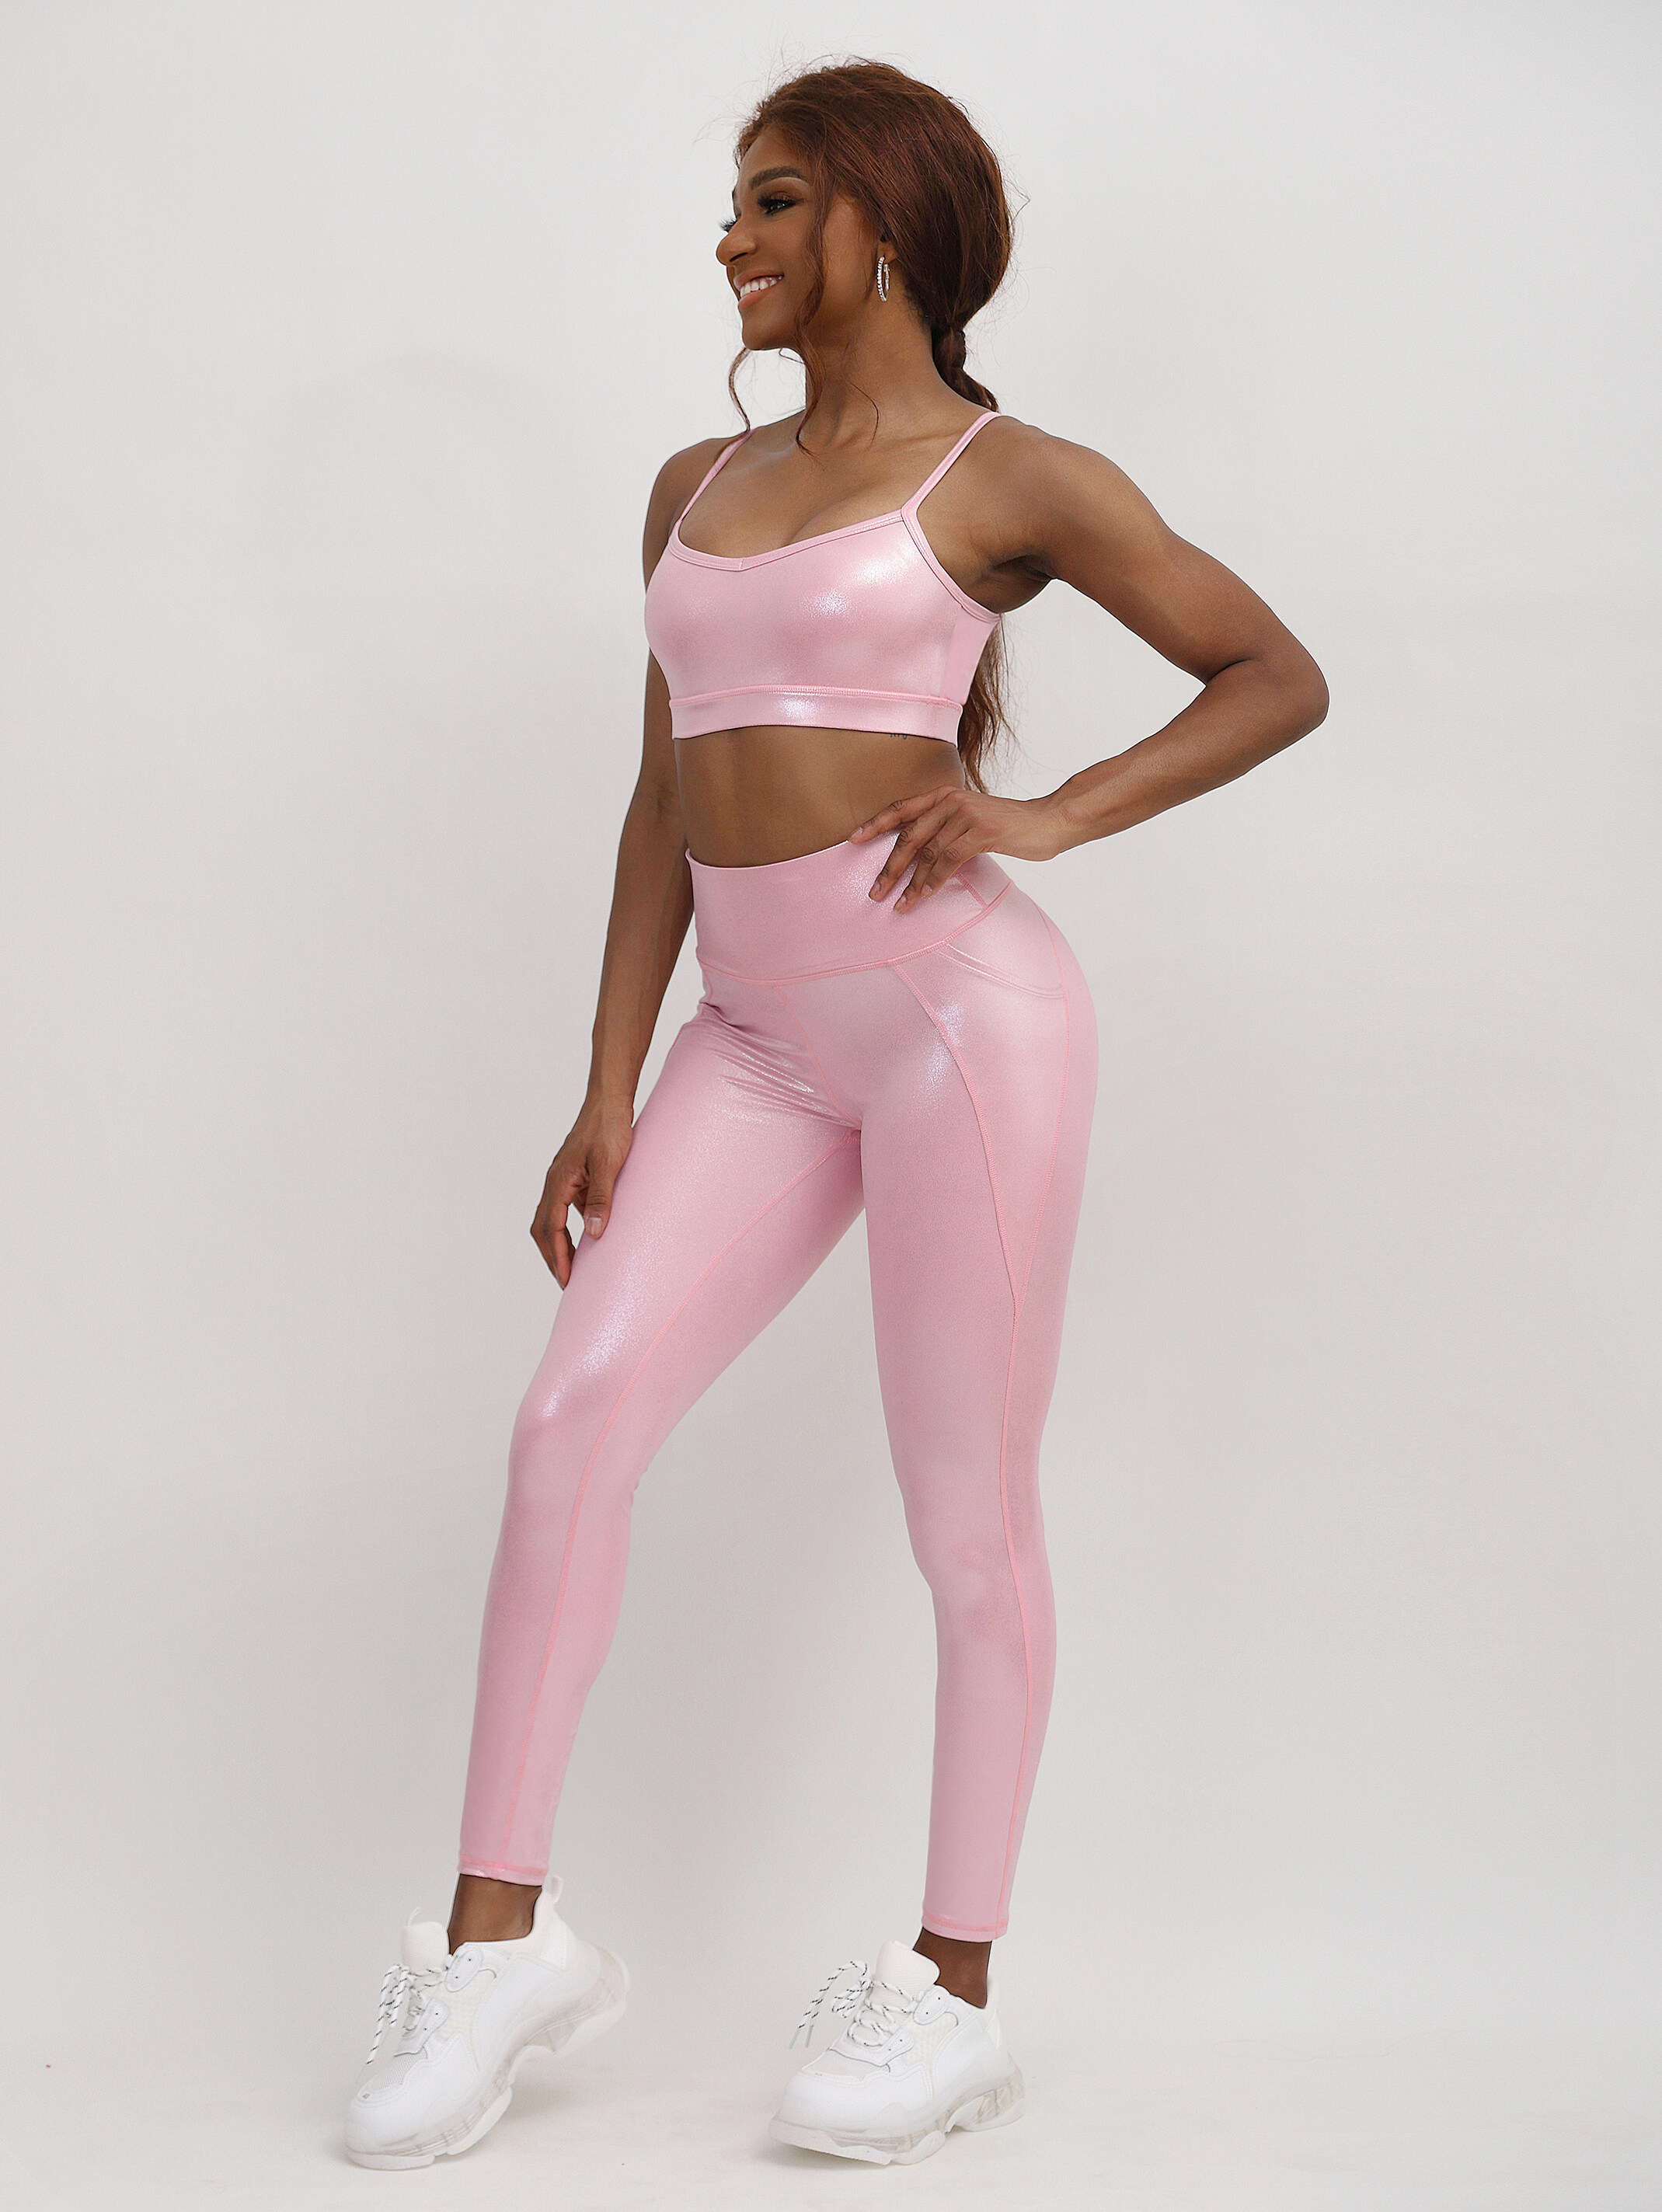 high waist thin strap active wear  supplier, pink shiny active wear  china, with pocket active wear distributor, with pocket active wear company